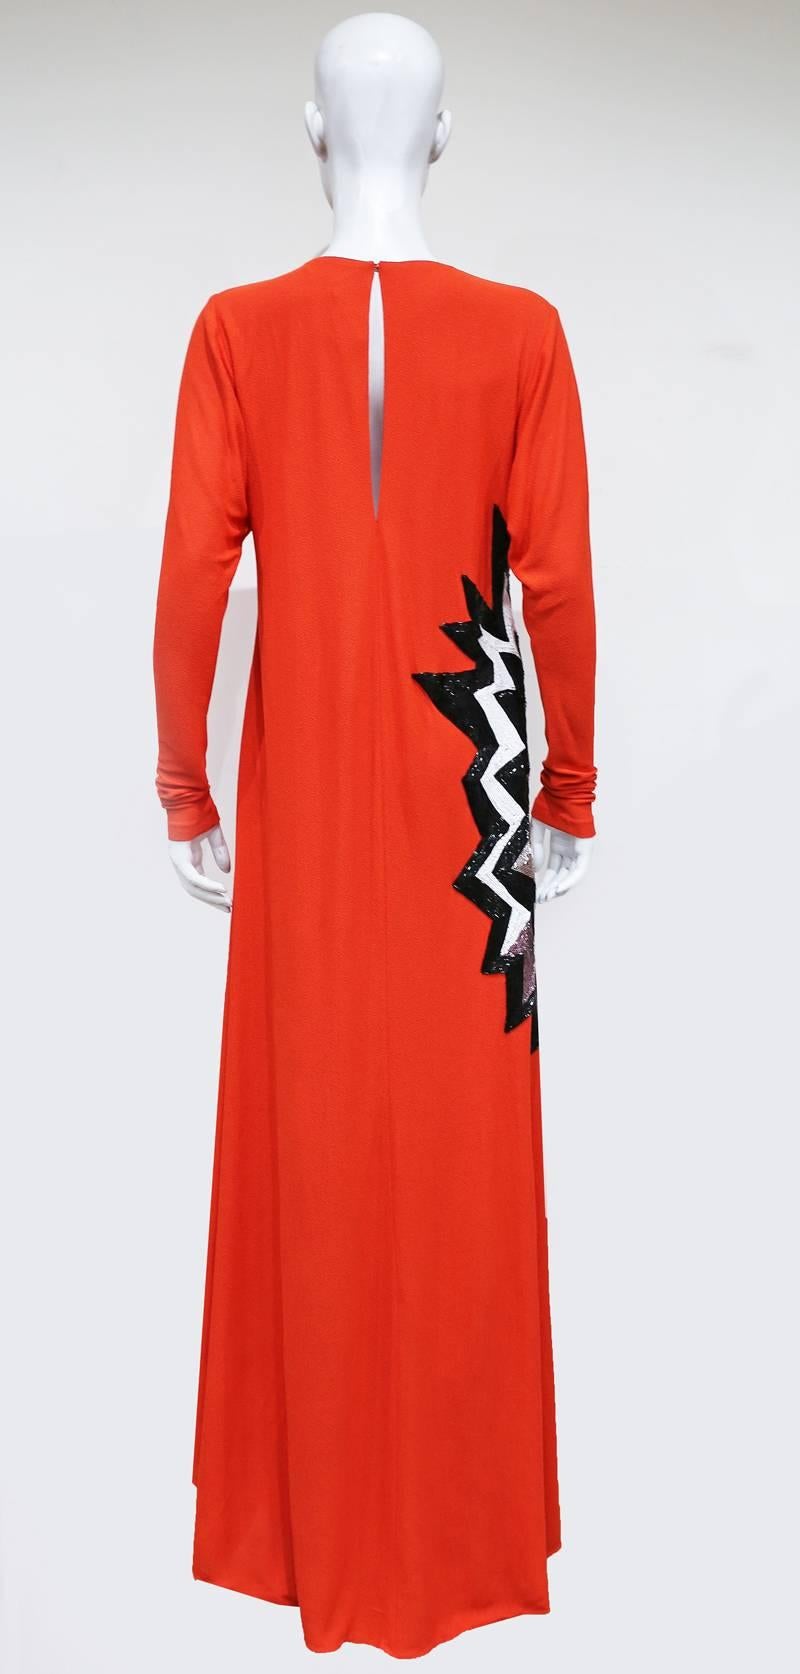 Tom Ford embellished pop art inspired coral evening dress, c. 2013 3